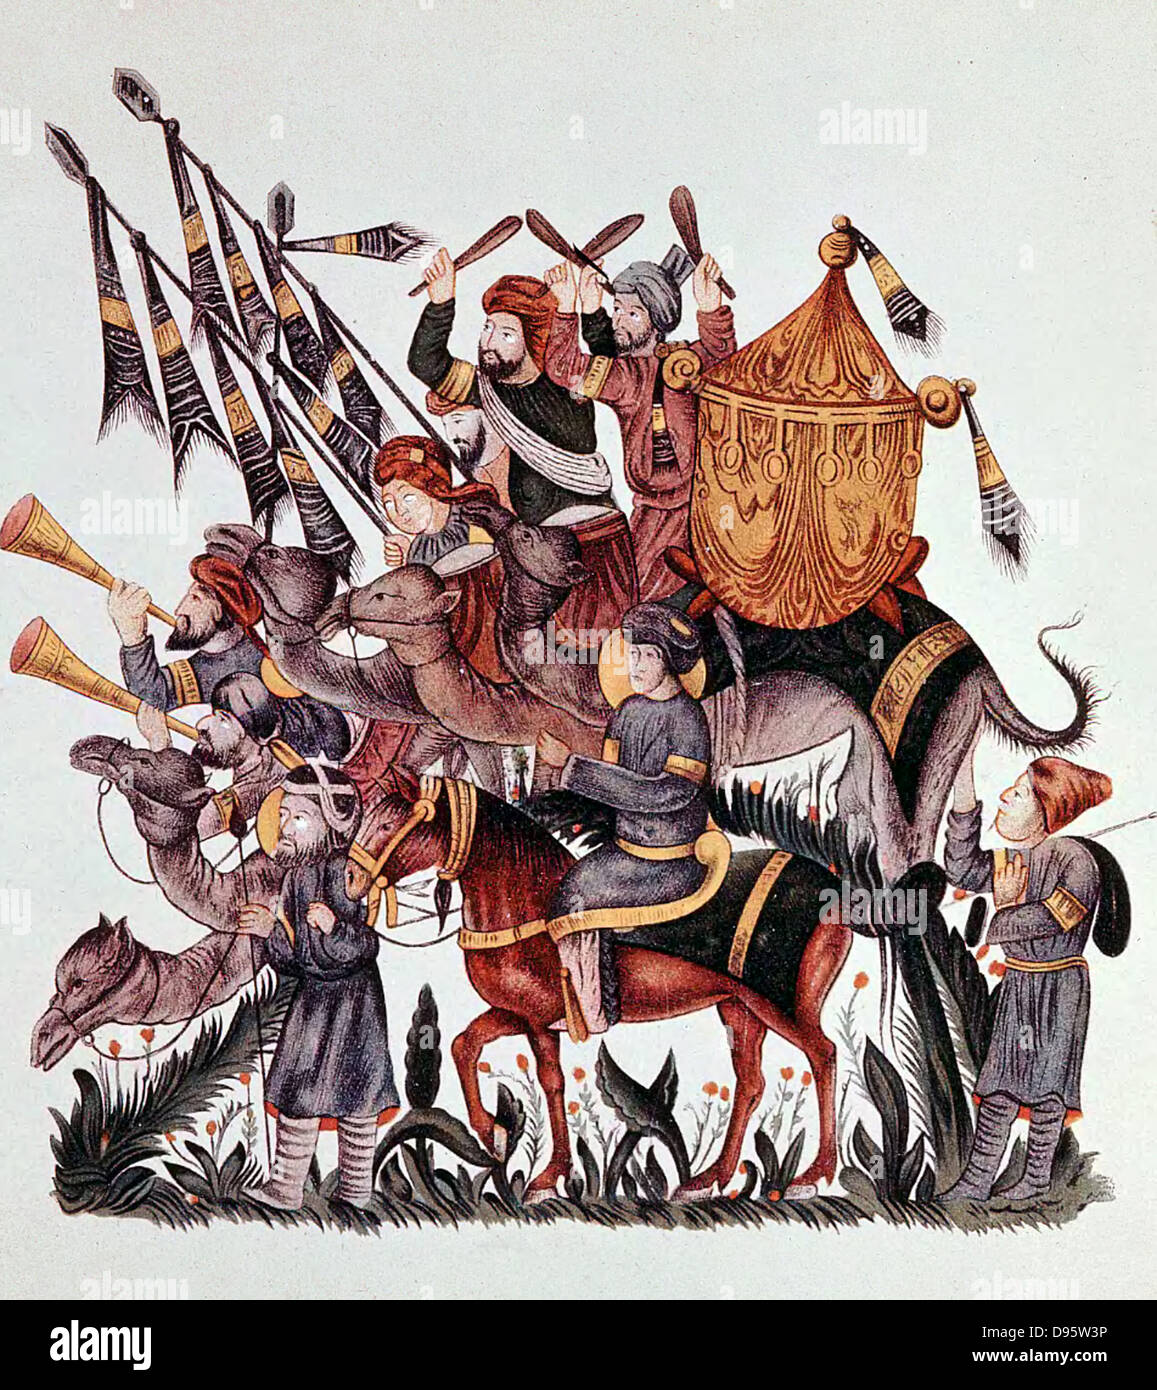 Étendard, les tambours et trompettes d'une armée sarrasine montés sur des chameaux et des chevaux. Manuscrit Arabe du 13e siècle. Banque D'Images